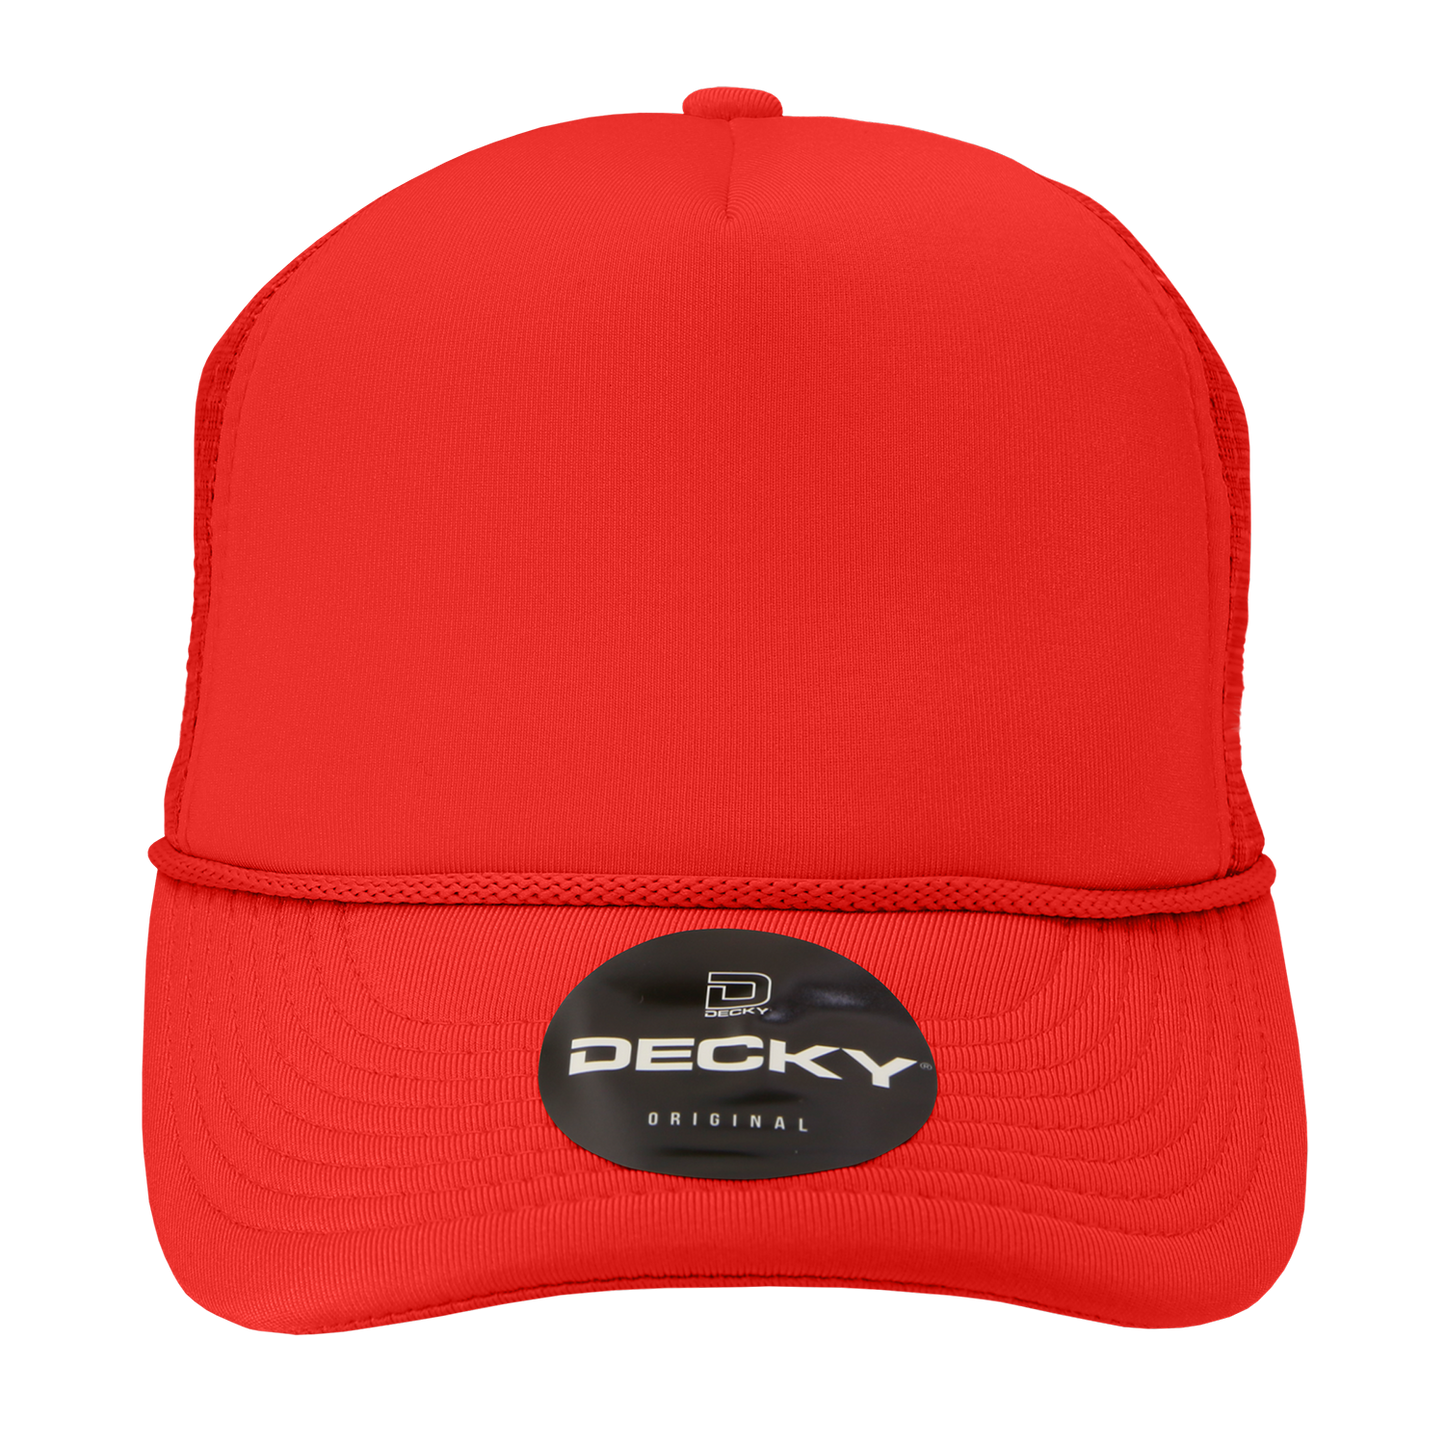 Custom Patch Decky 211 - 5 Panel Foam Trucker Cap, Mesh Back Hat